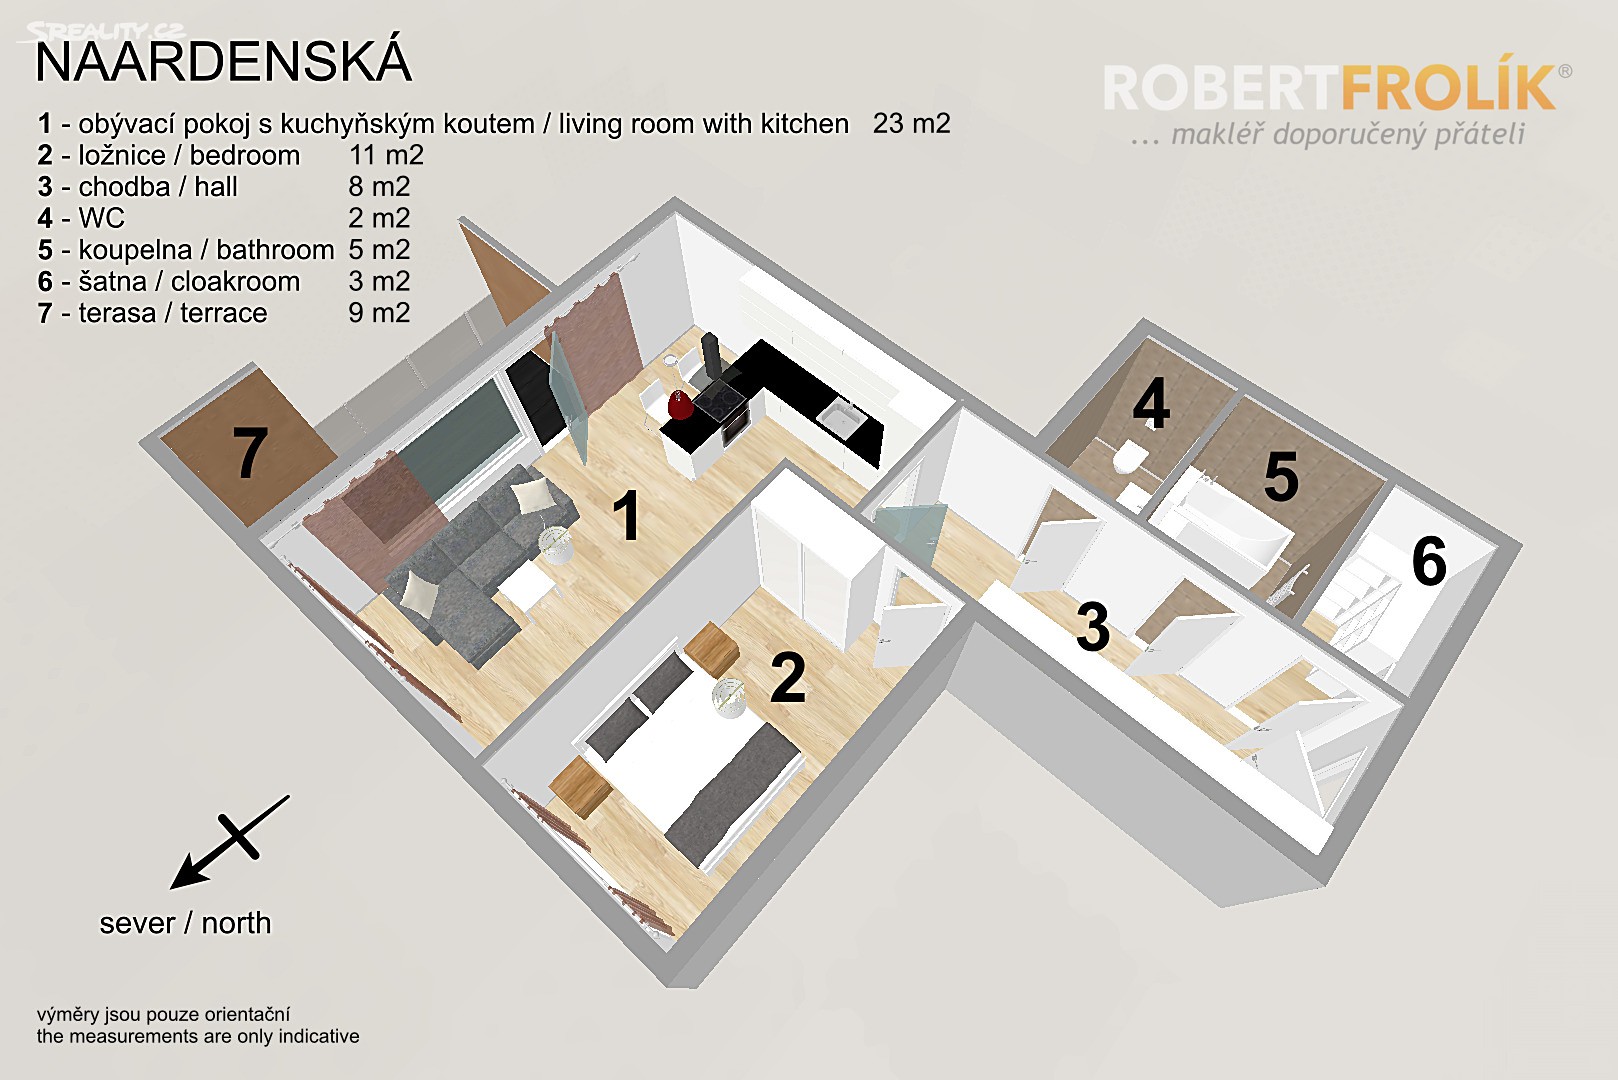 Pronájem bytu 2+kk 54 m², Naardenská, Praha 6 - Liboc